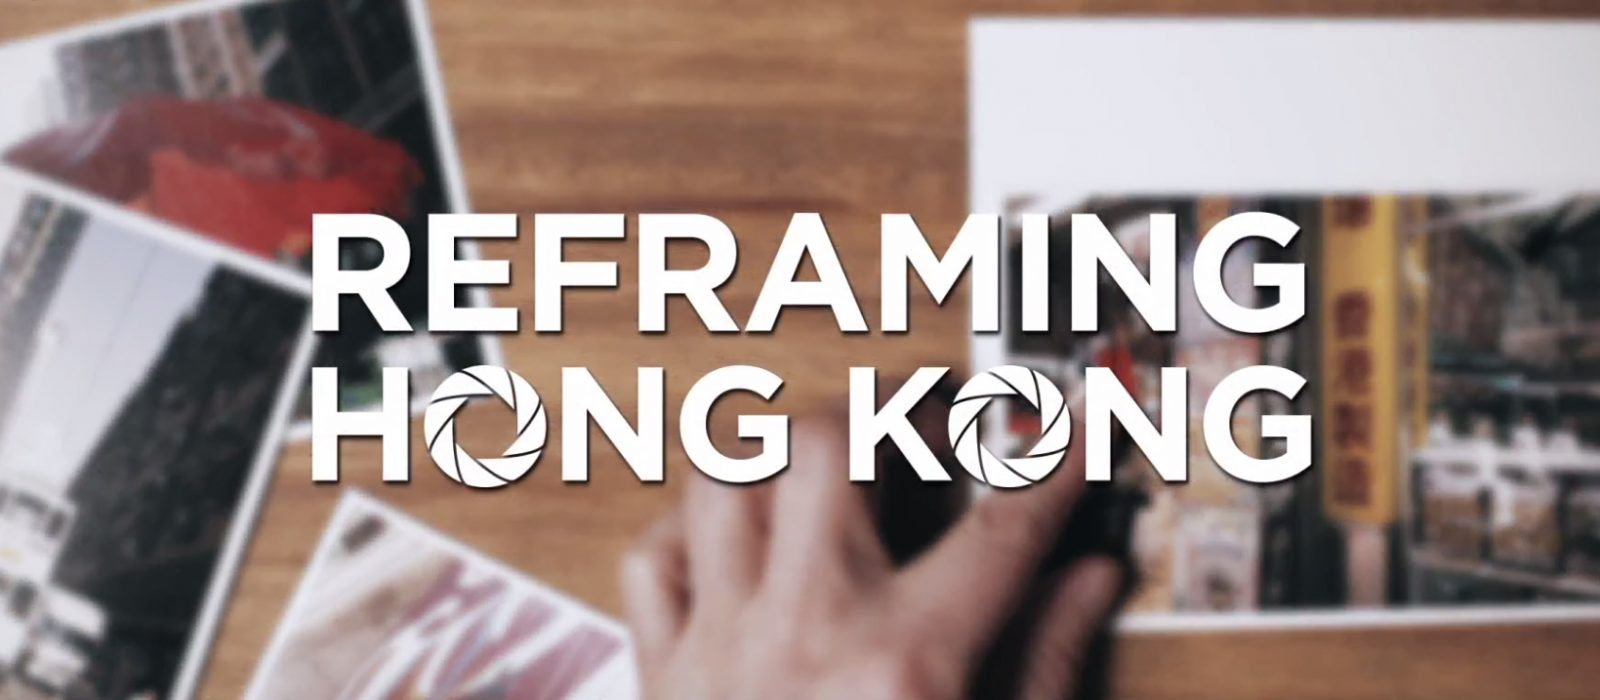 Reframing Hong Kong - Hong Kong Tourism Board